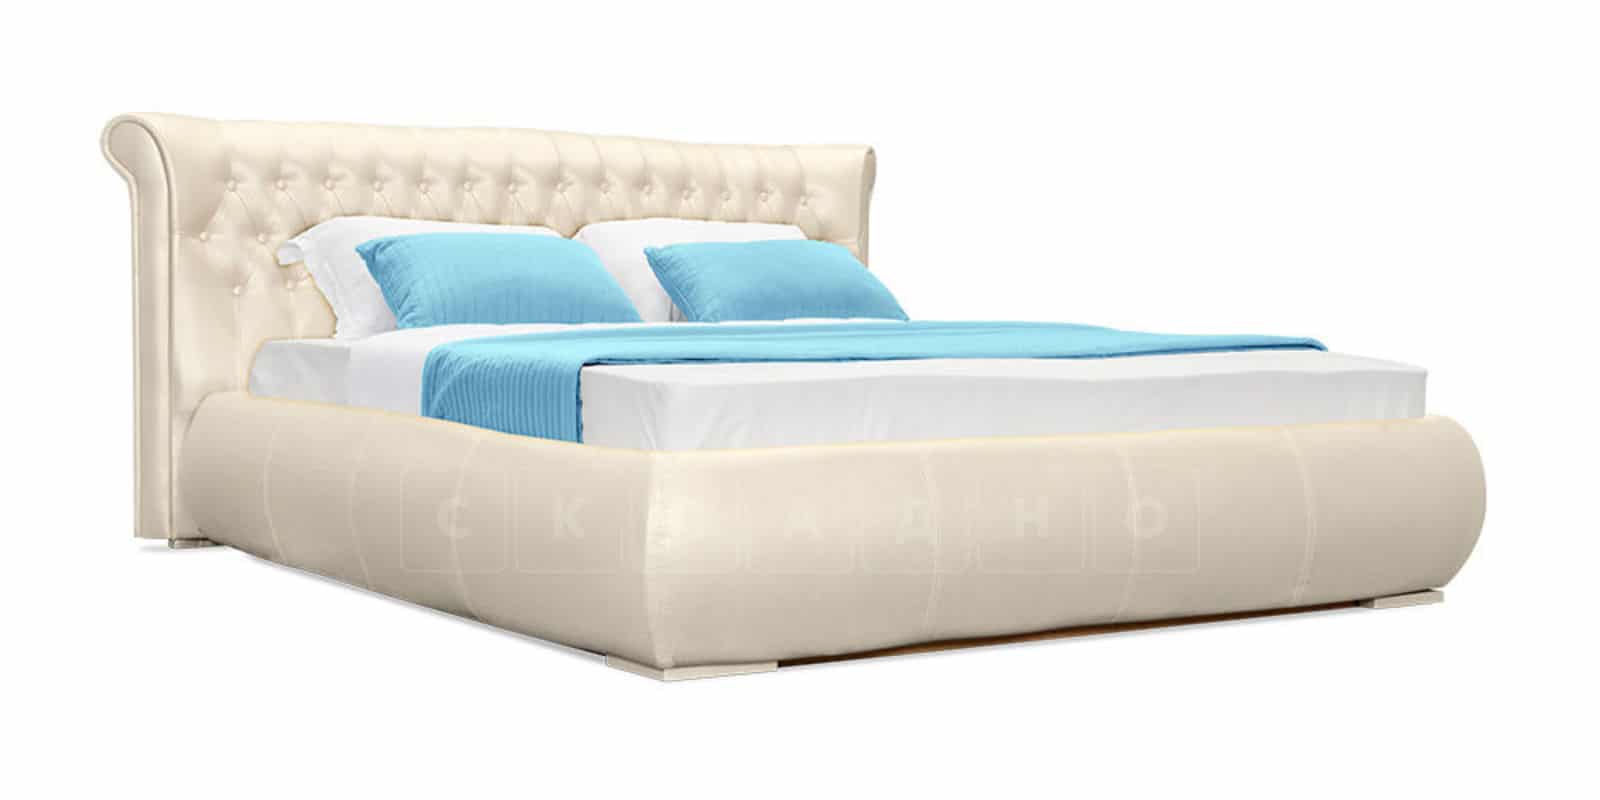 Мягкая кровать Вирджиния 160 см экокожа перламутрового цвета фото 2 | интернет-магазин Складно